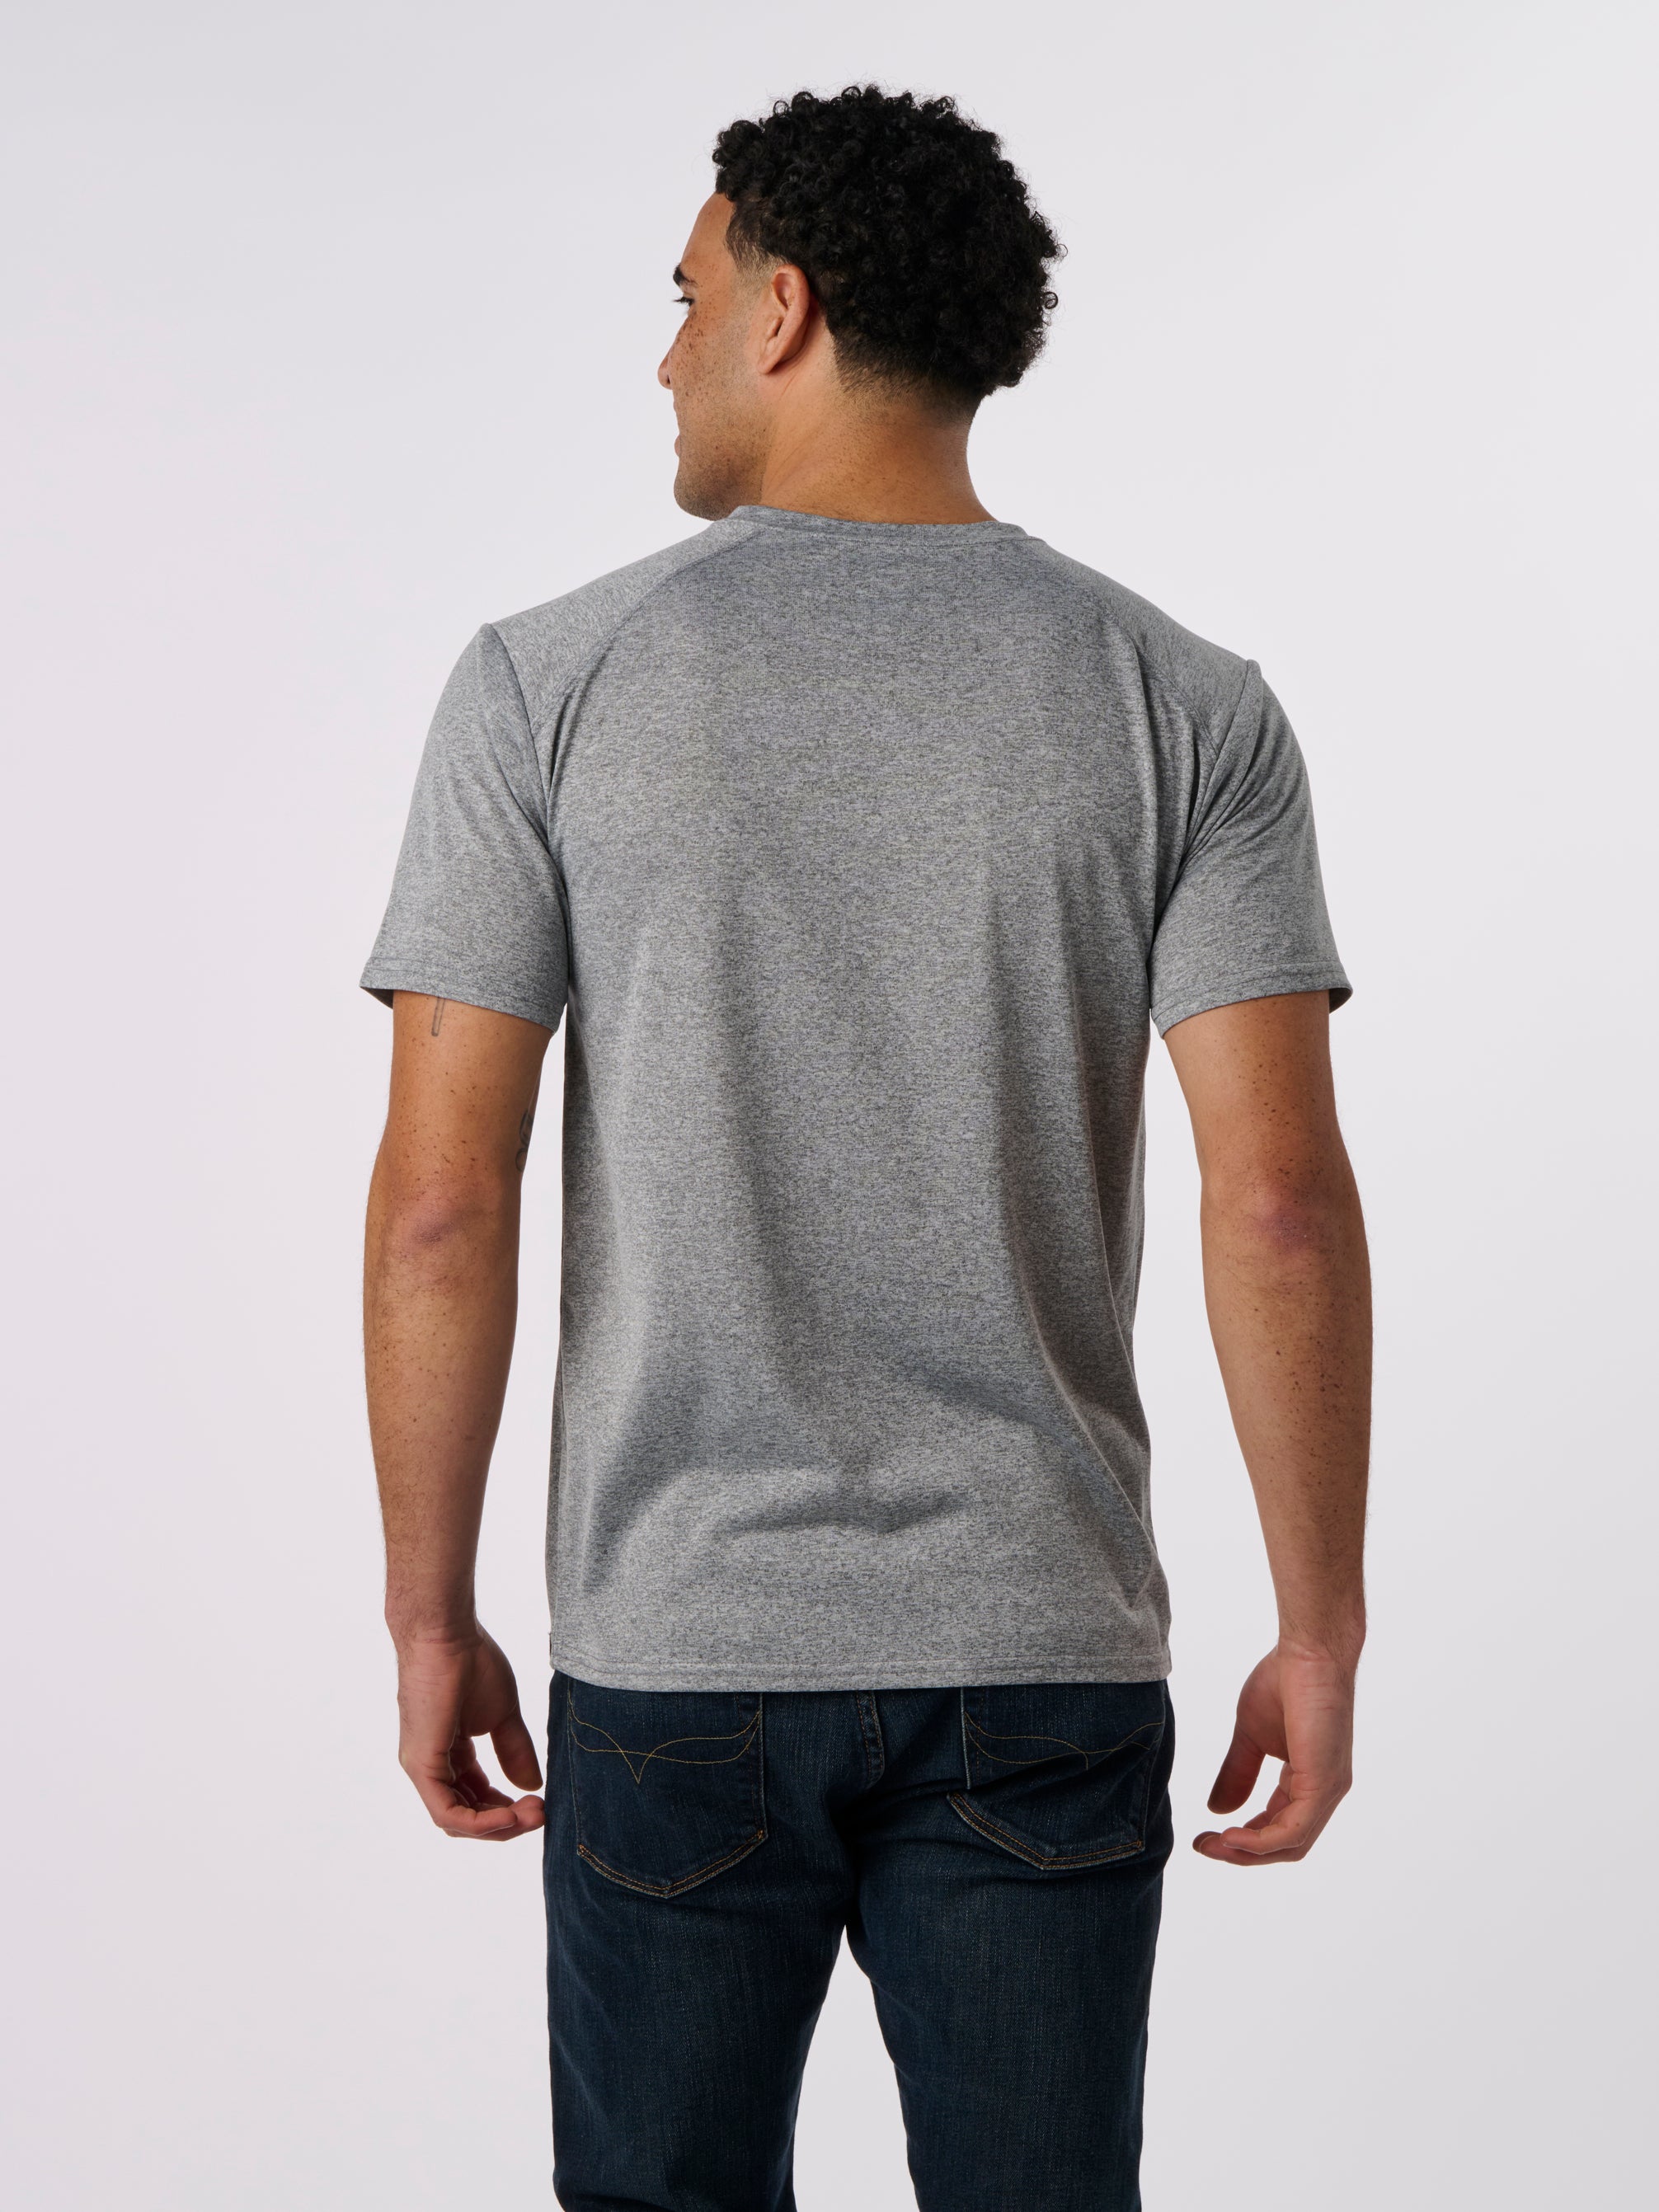 RD1000 - Sport Short Sleeve T-Shirt